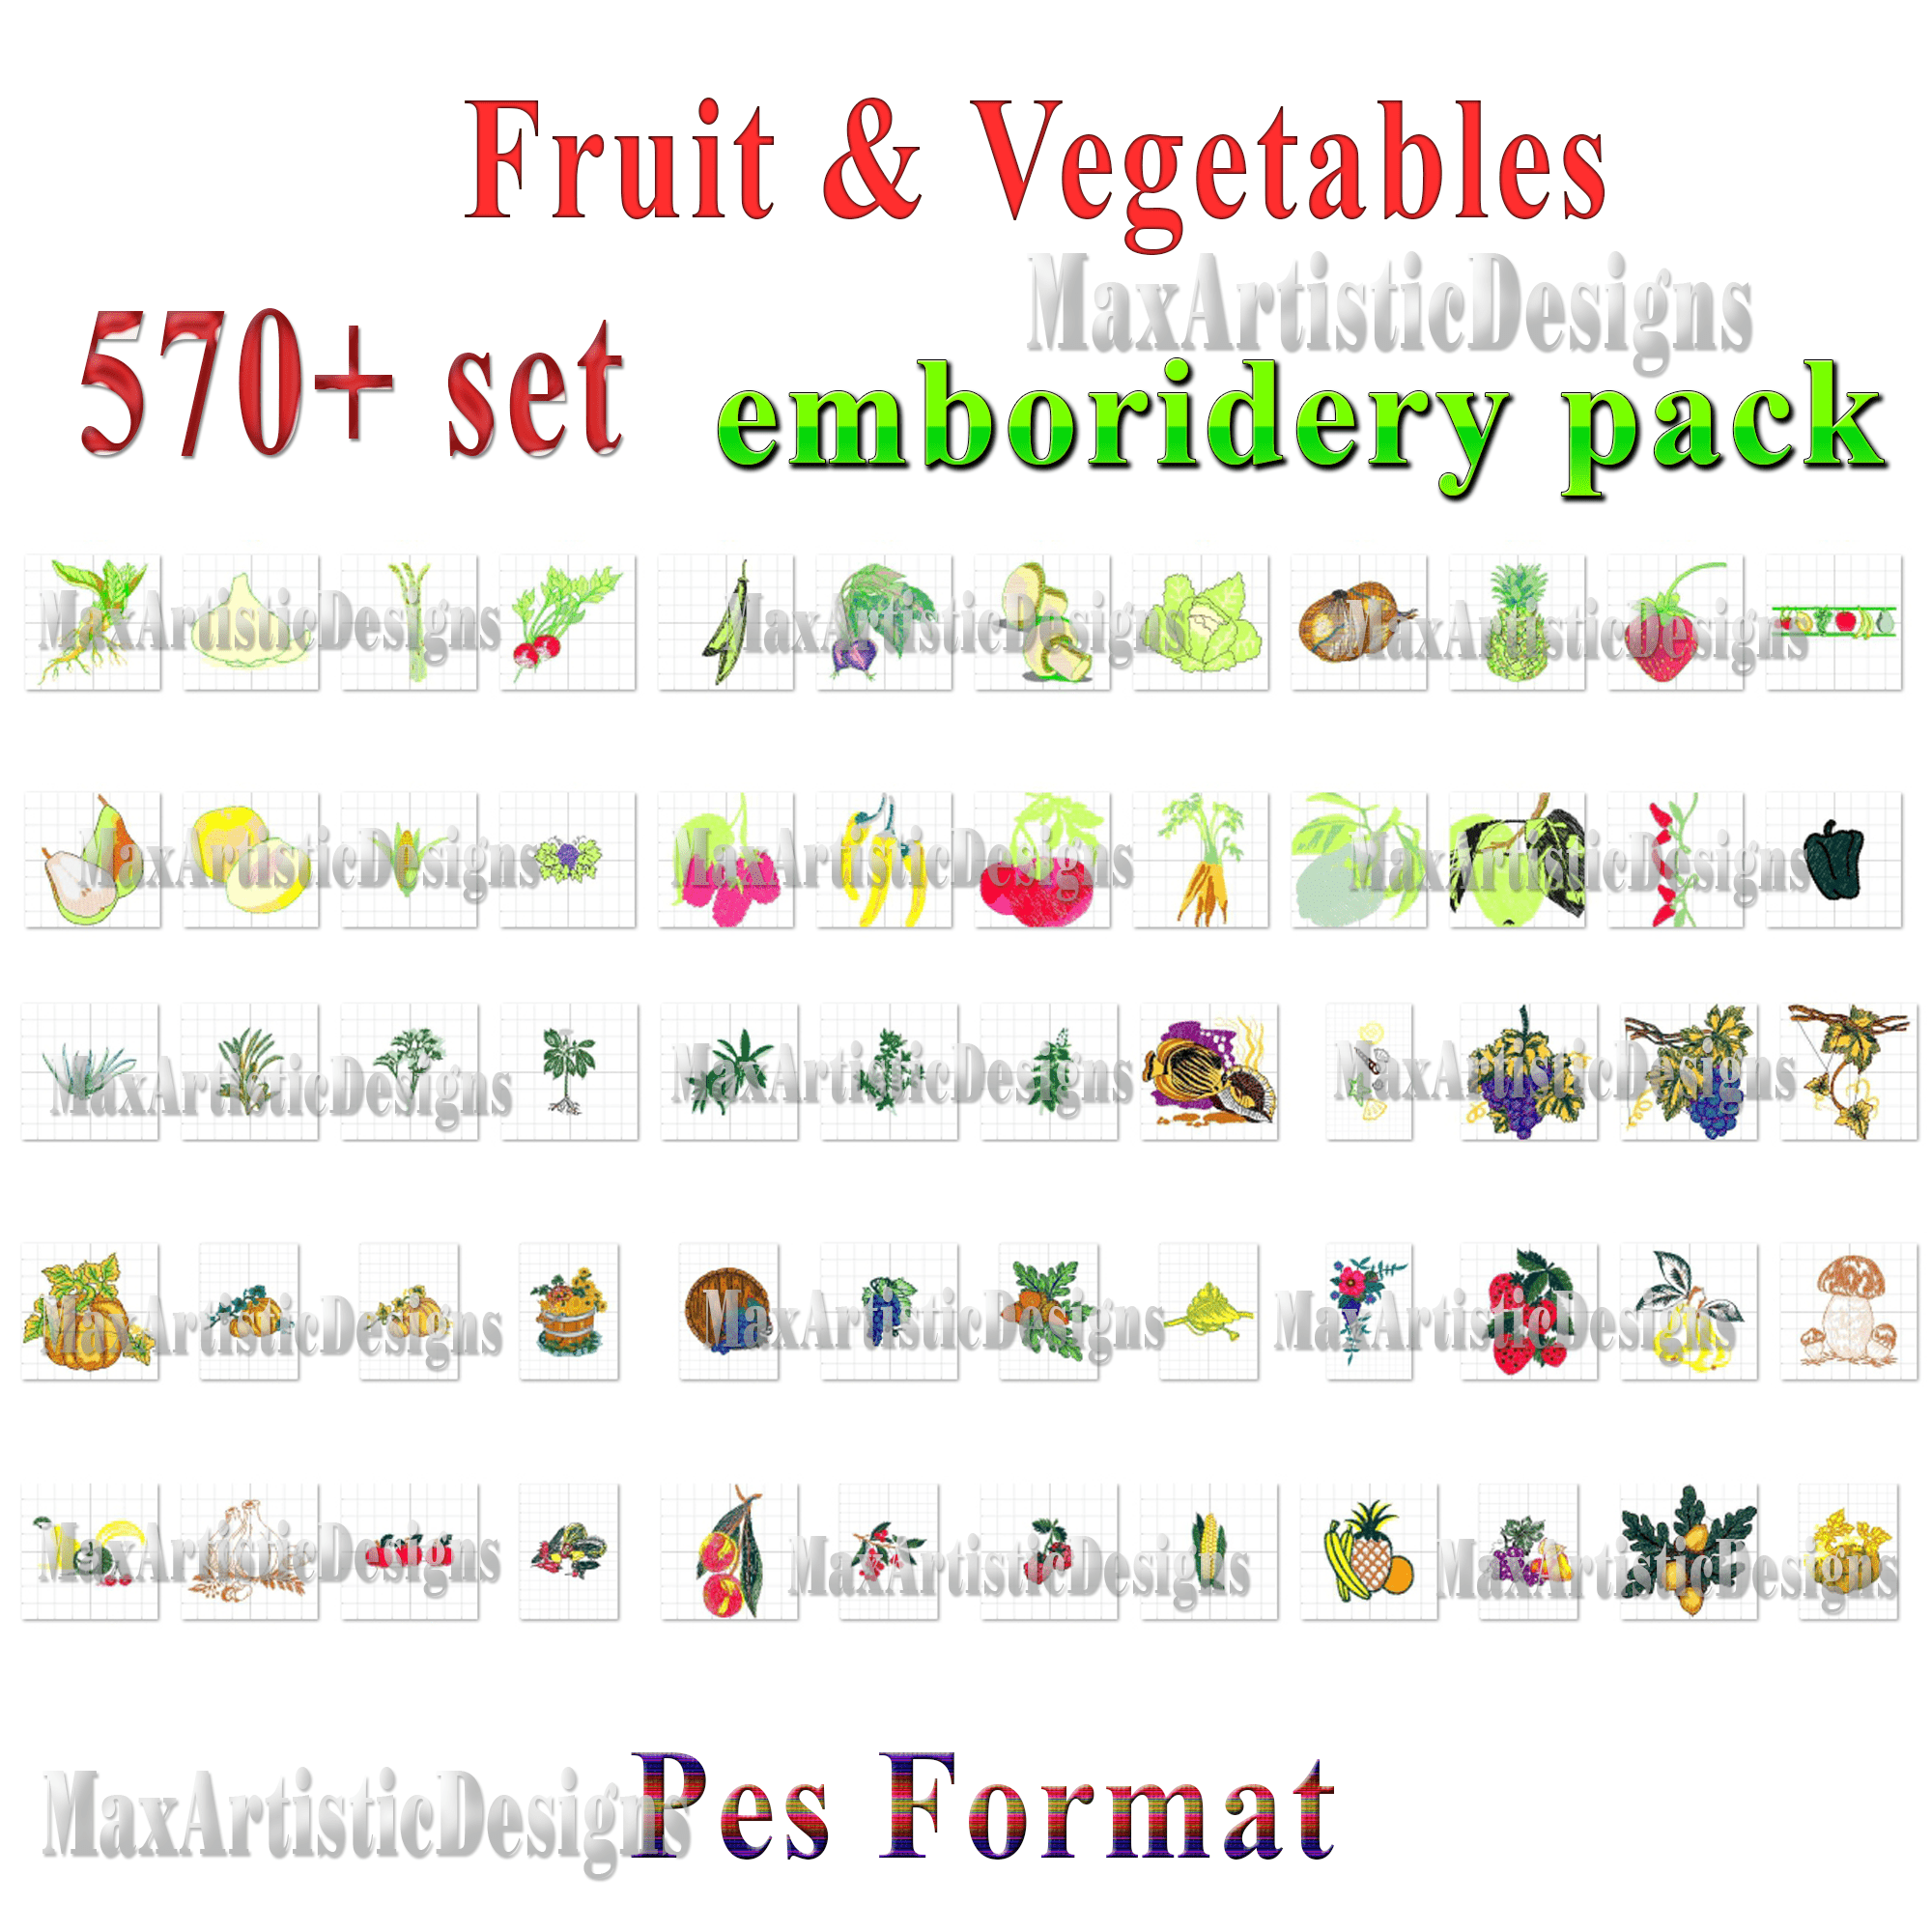 Diseños de bordados a máquina: más de 570 diseños de bordados de frutas y verduras